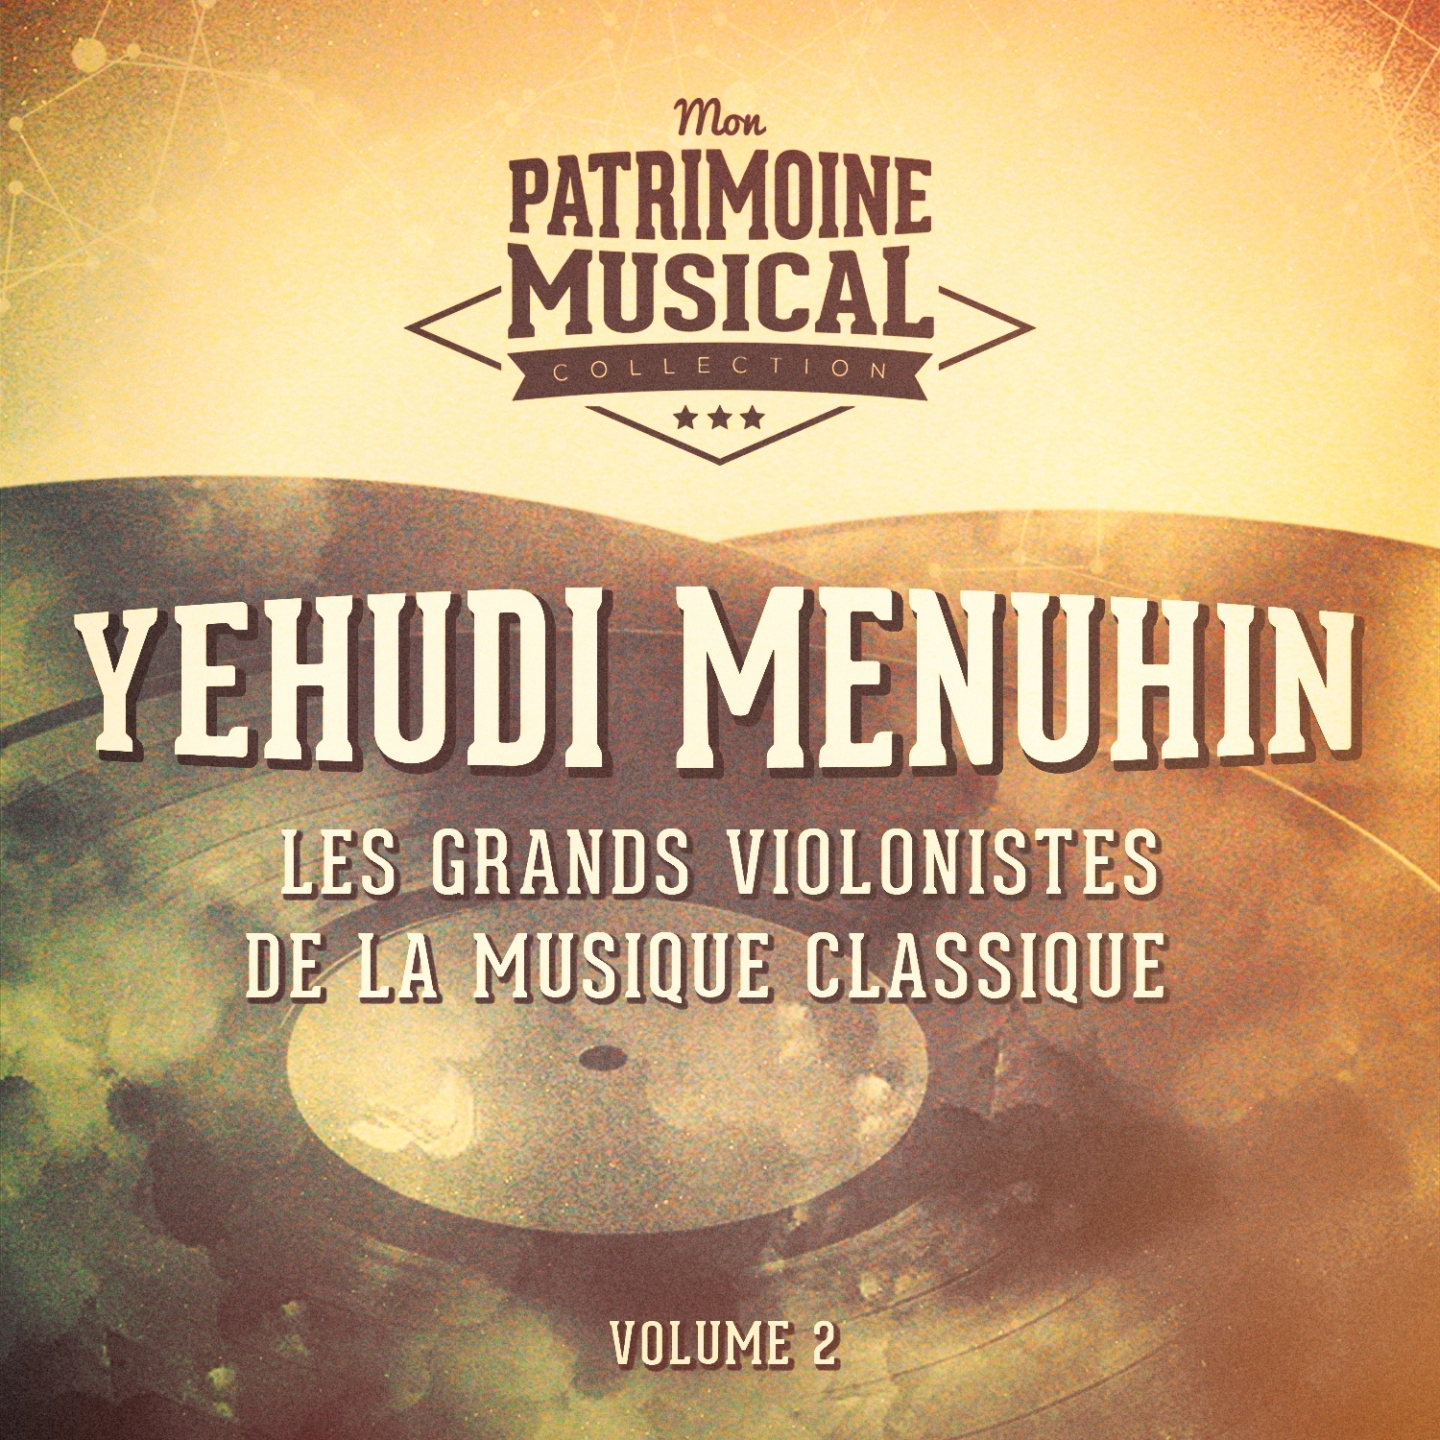 Les grands violonistes de la musique classique : Yehudi Menuhin, Vol. 2